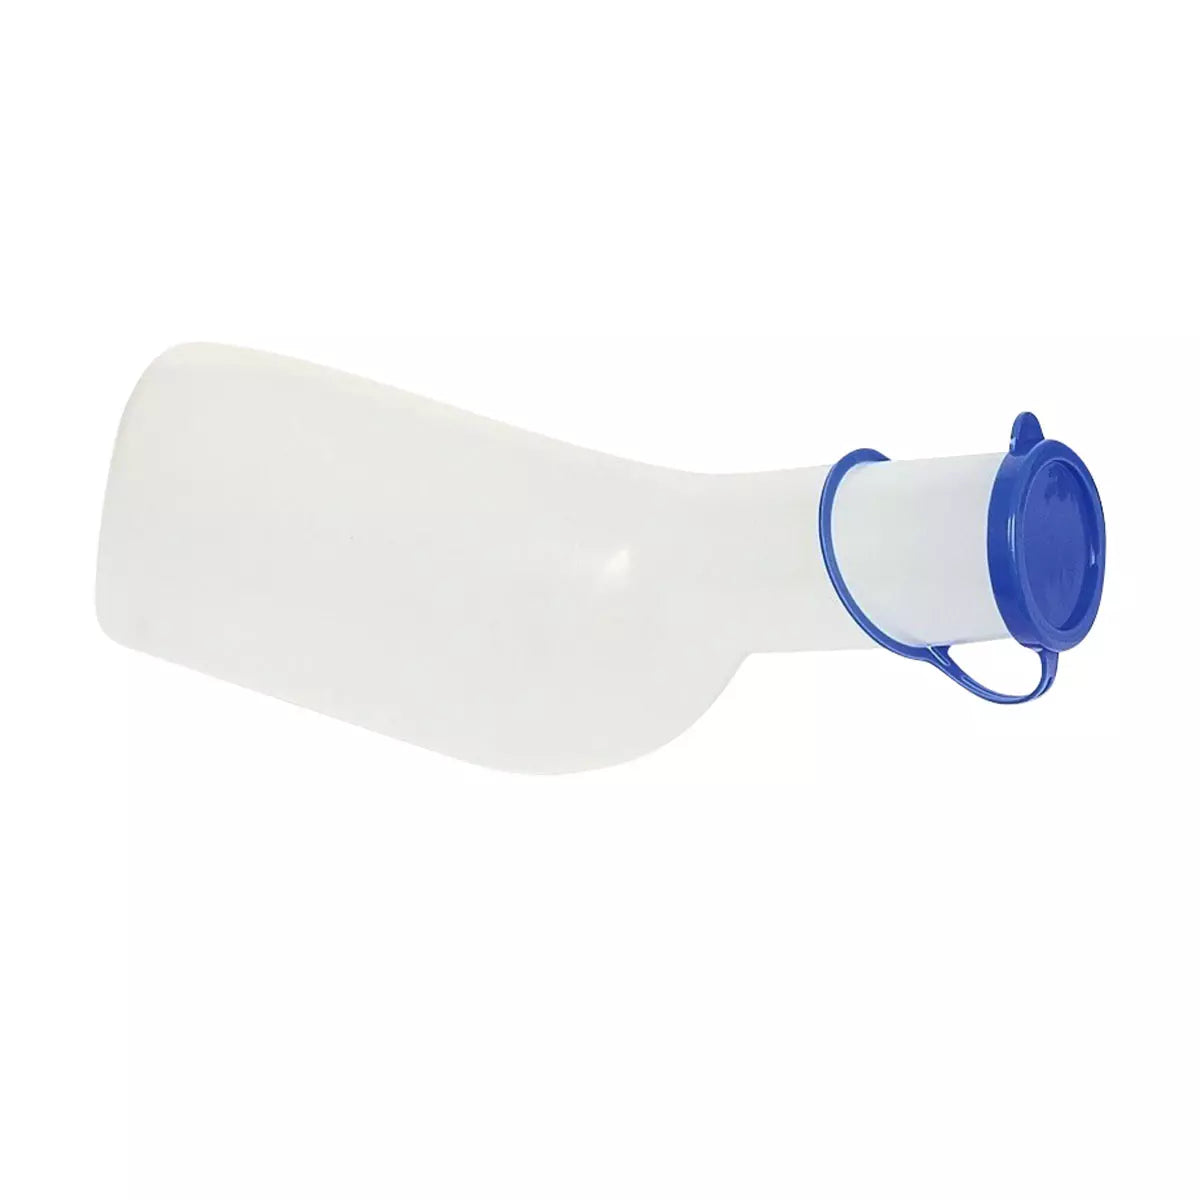 PE Urinflasche für Männer, eckig, Farbe milchig mit blauem PP Deckel